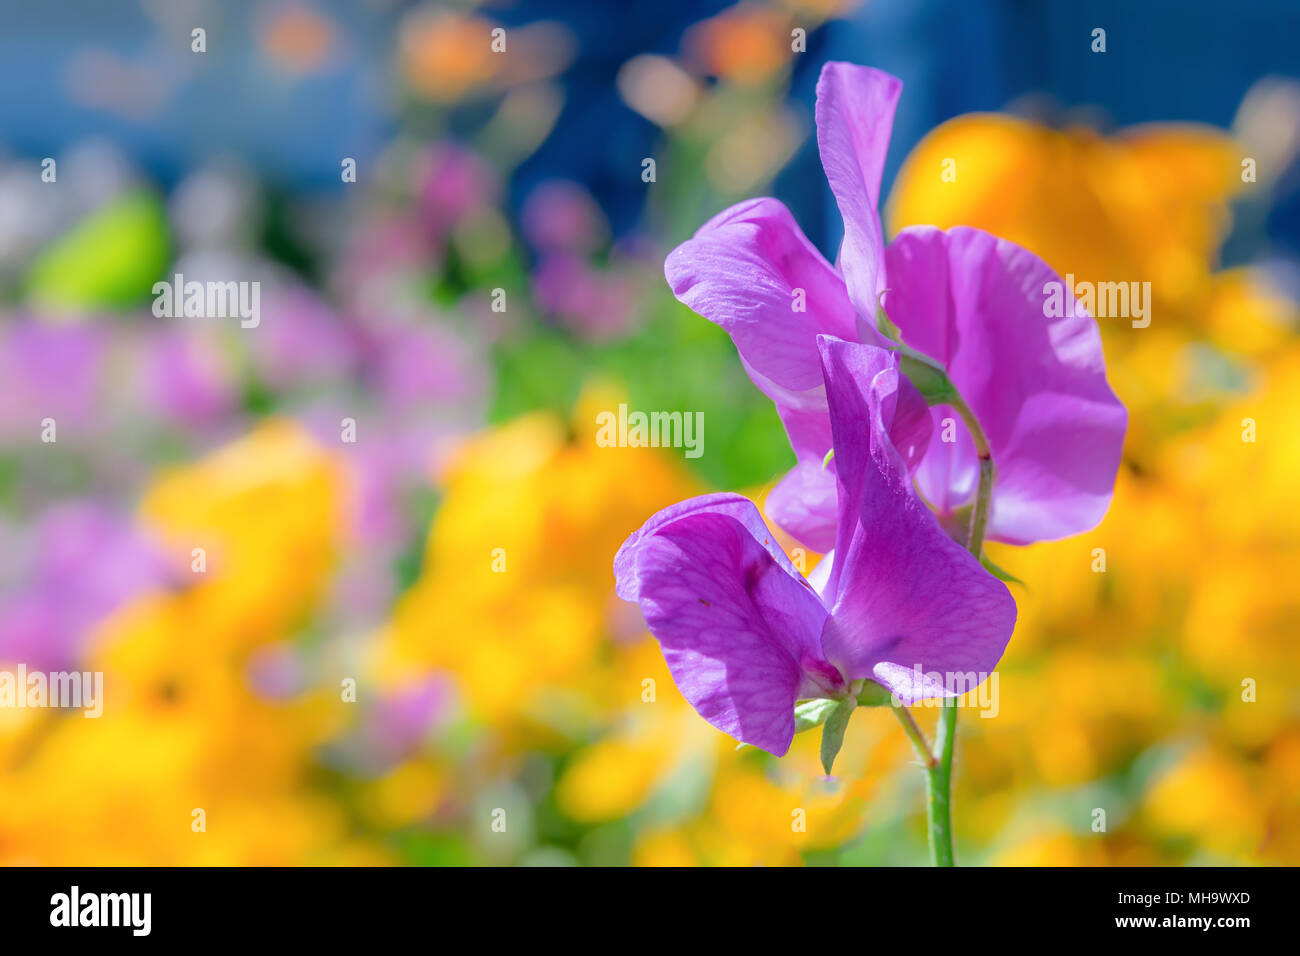 Viola pisello dolce fiore fotografato con una specialità la lente per ottenere profondità di campo e sfondo da sogno. Foto Stock